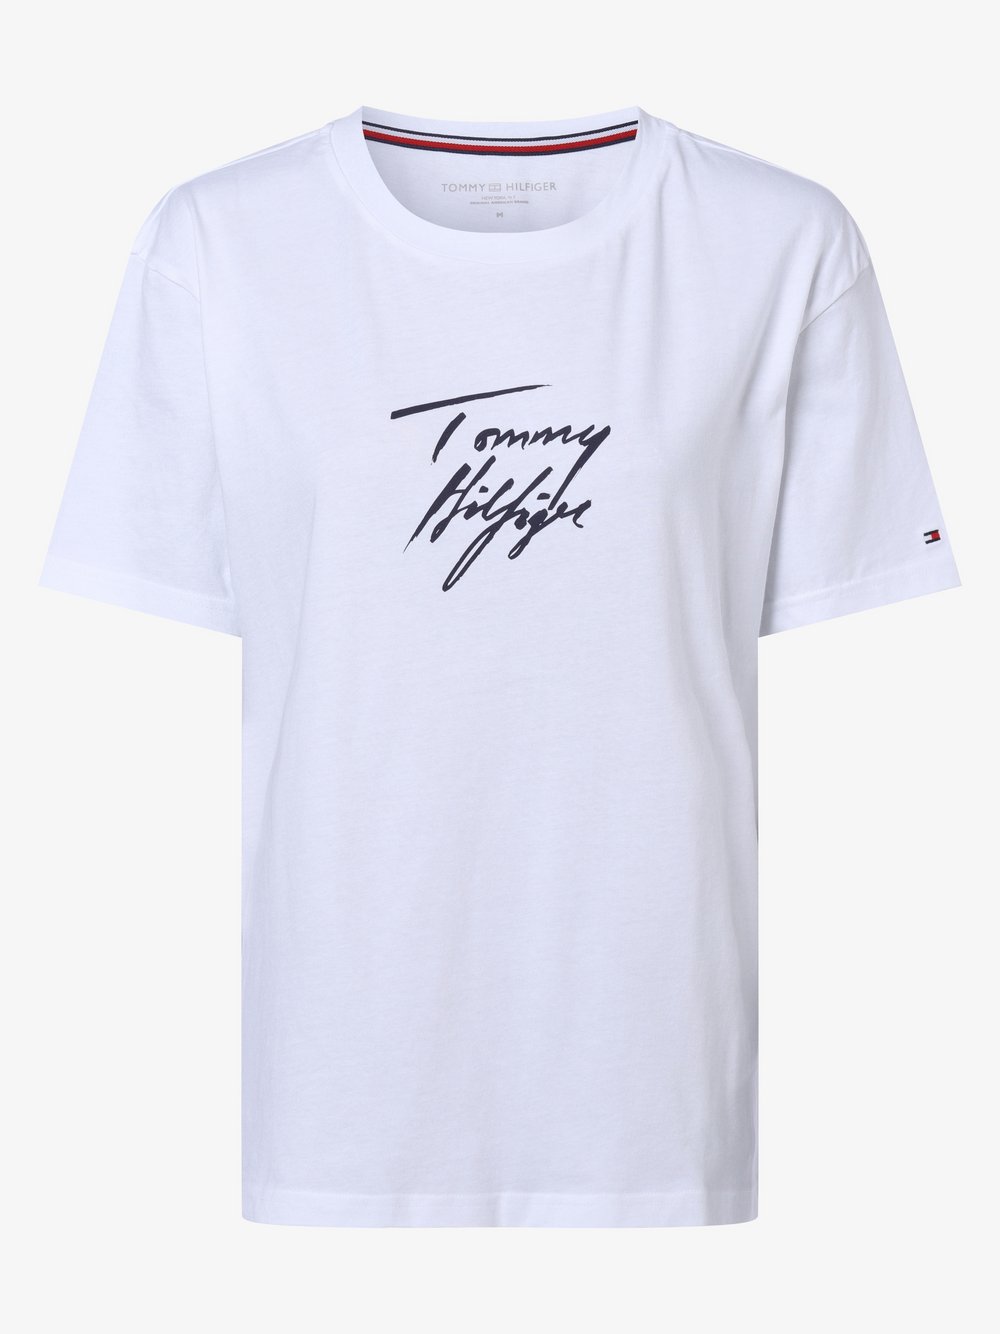 Tommy Hilfiger - Damska koszulka od piżamy, biały